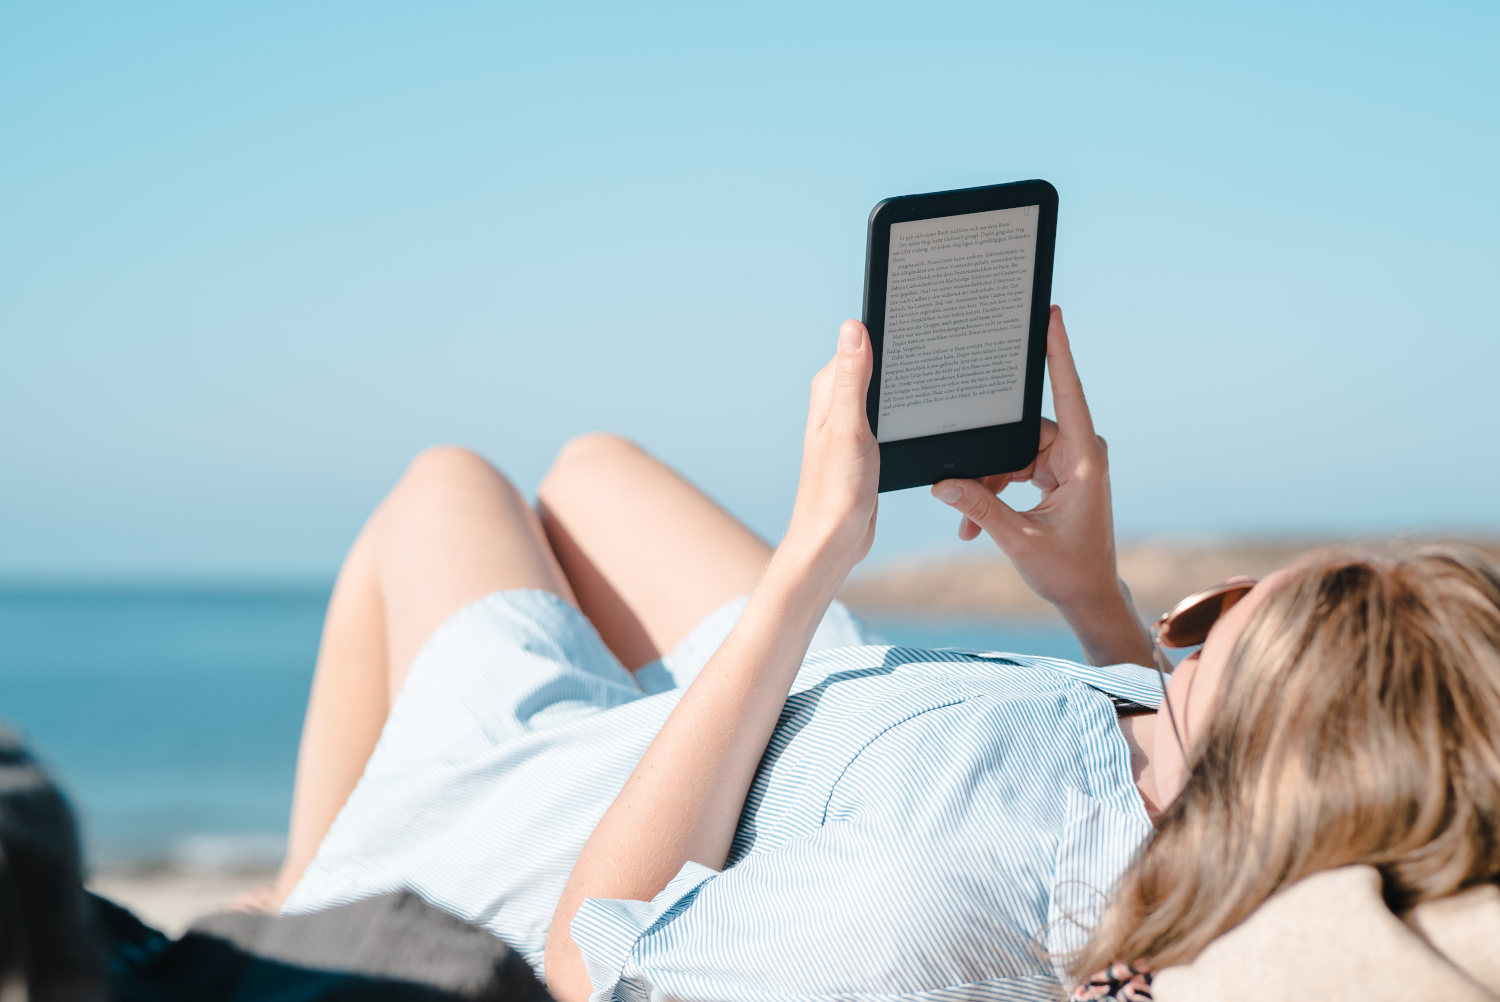 Miglior Kindle per leggere: modelli e caratteristiche